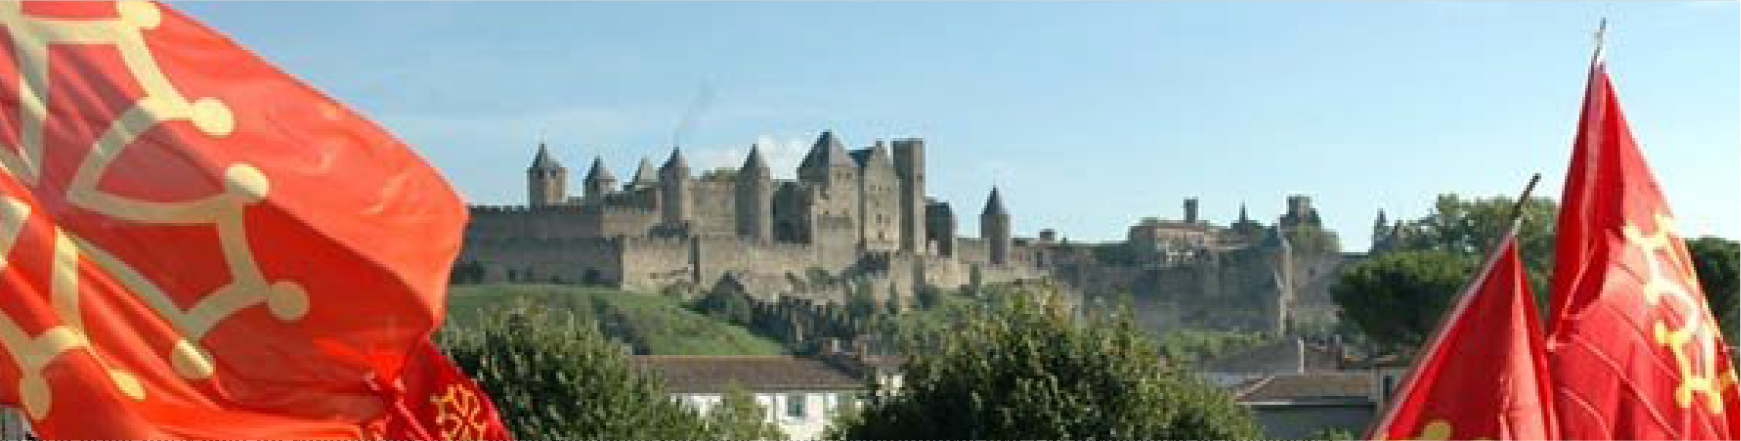 Rassemblement occitan devant la cité médiévale de Carcassonne